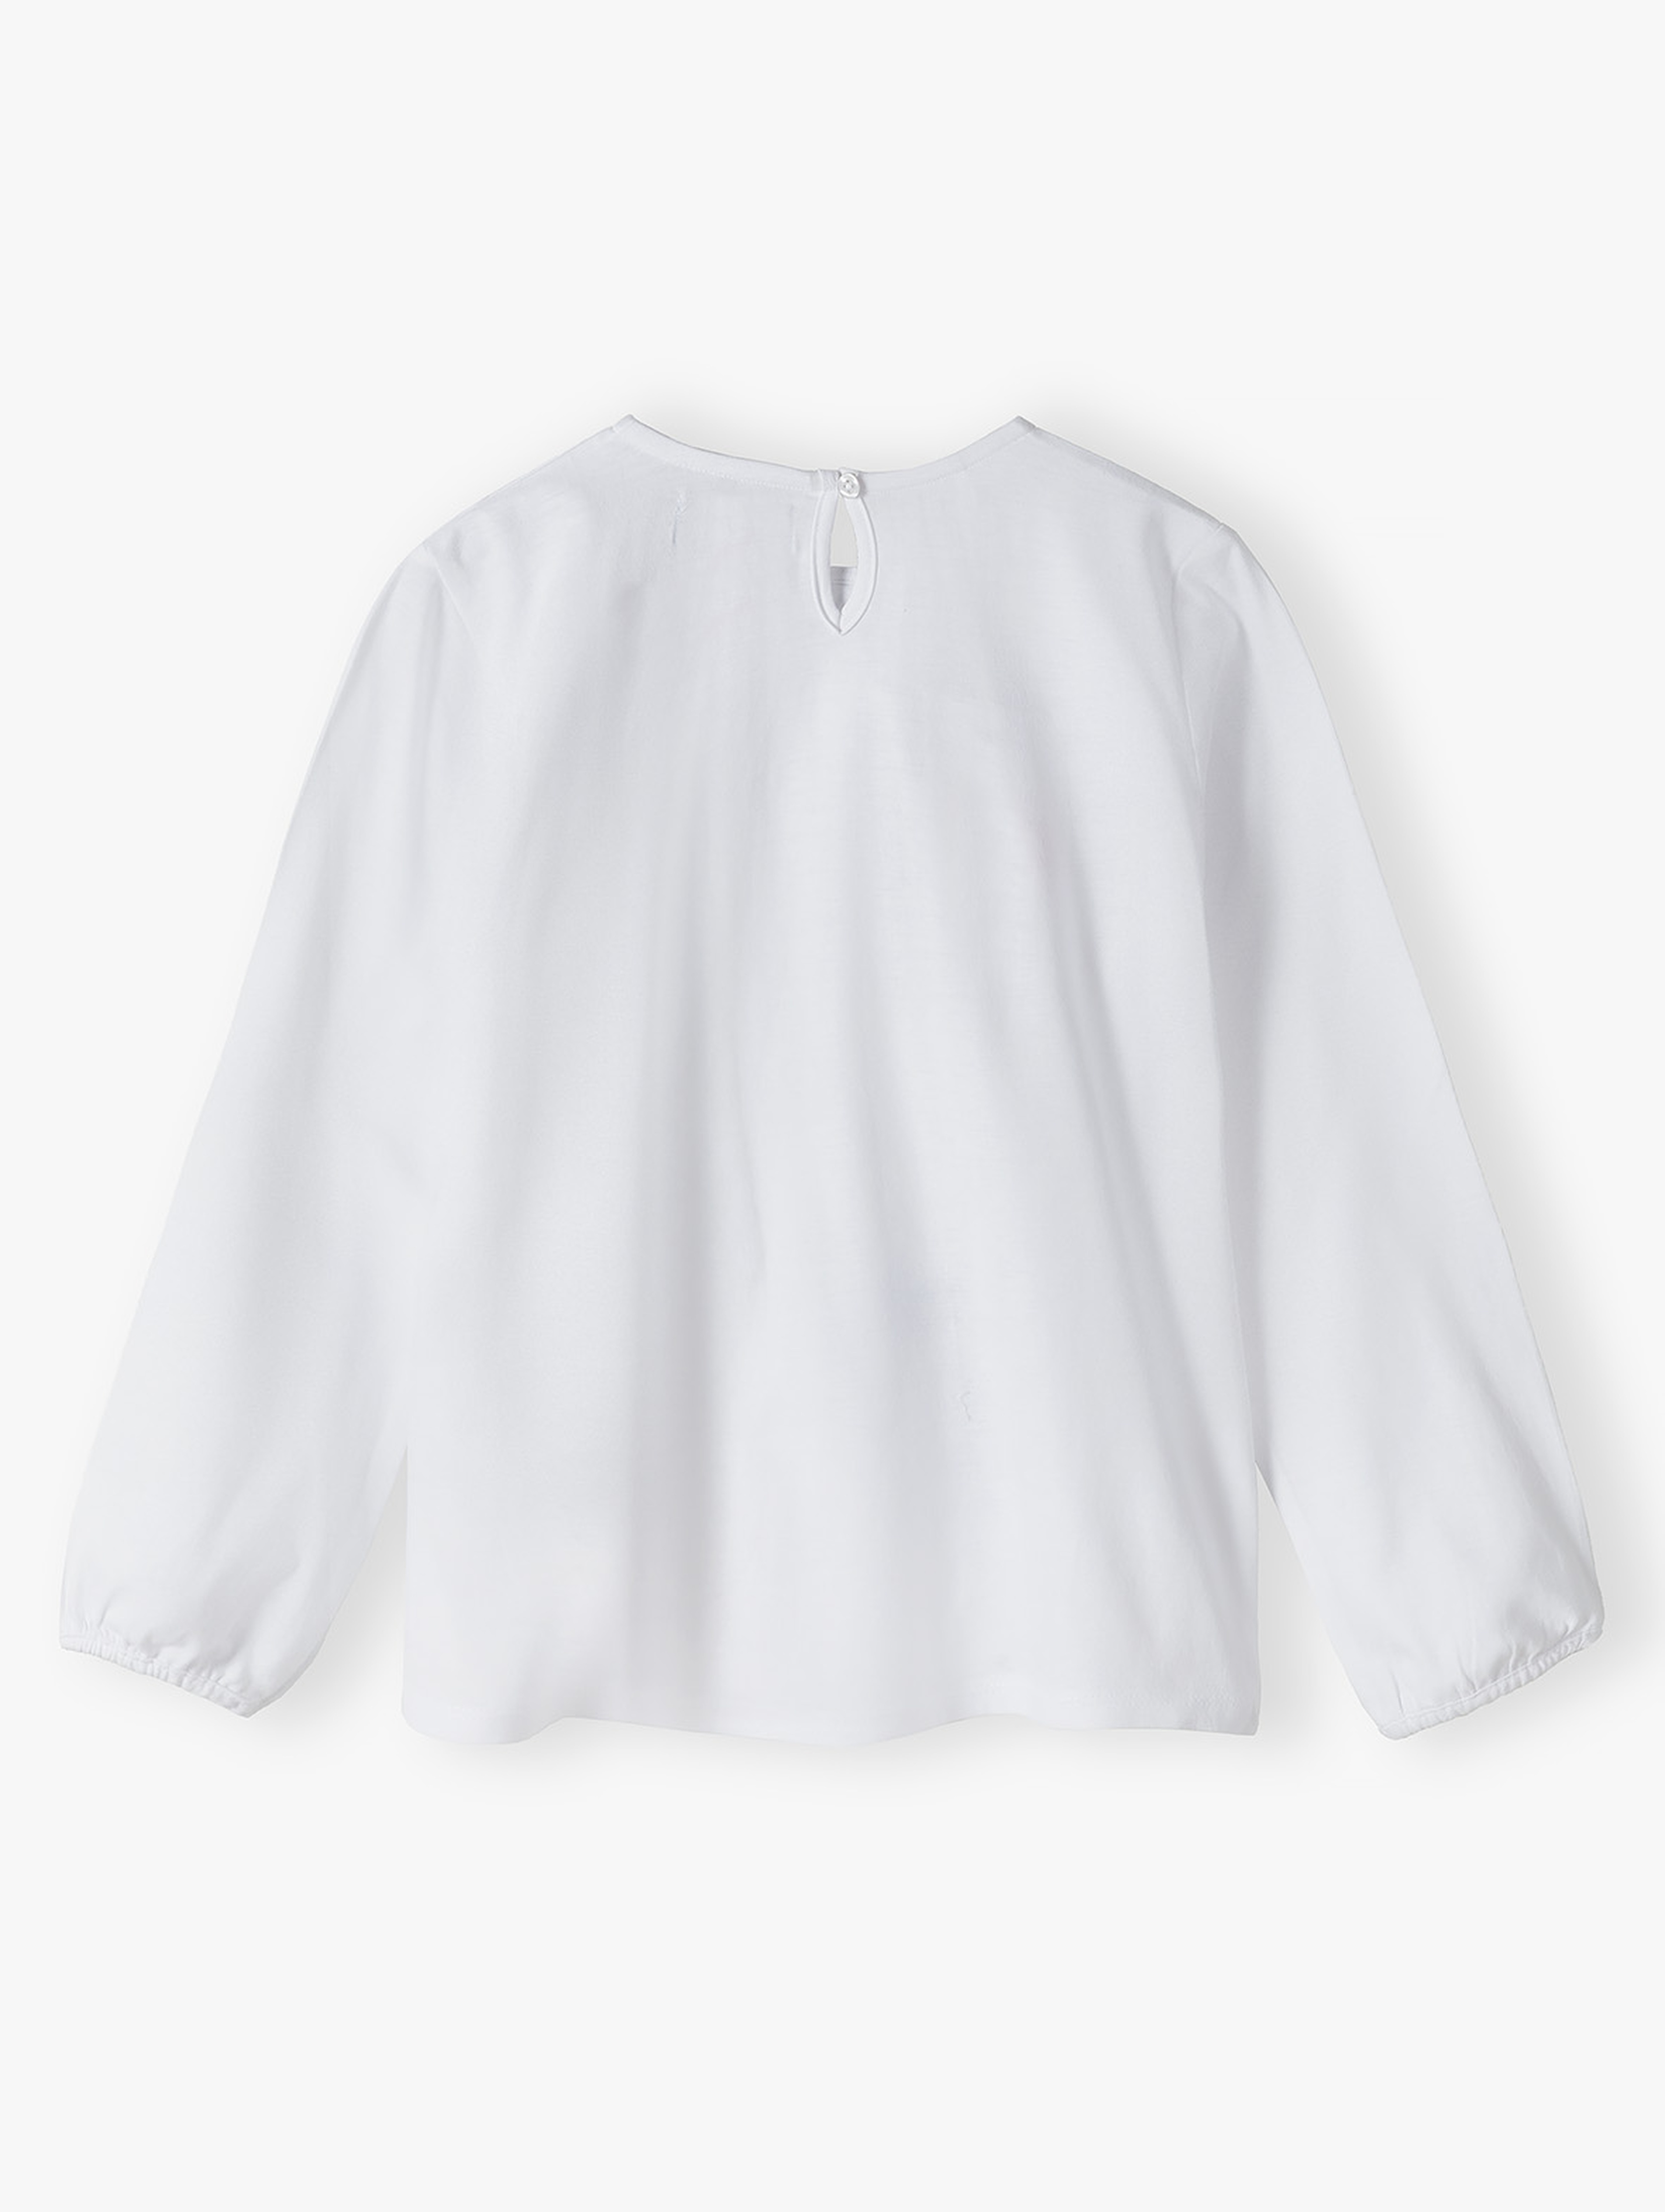 Bawełniana elegancka biała bluzka dla dziewczynki - długi rękaw